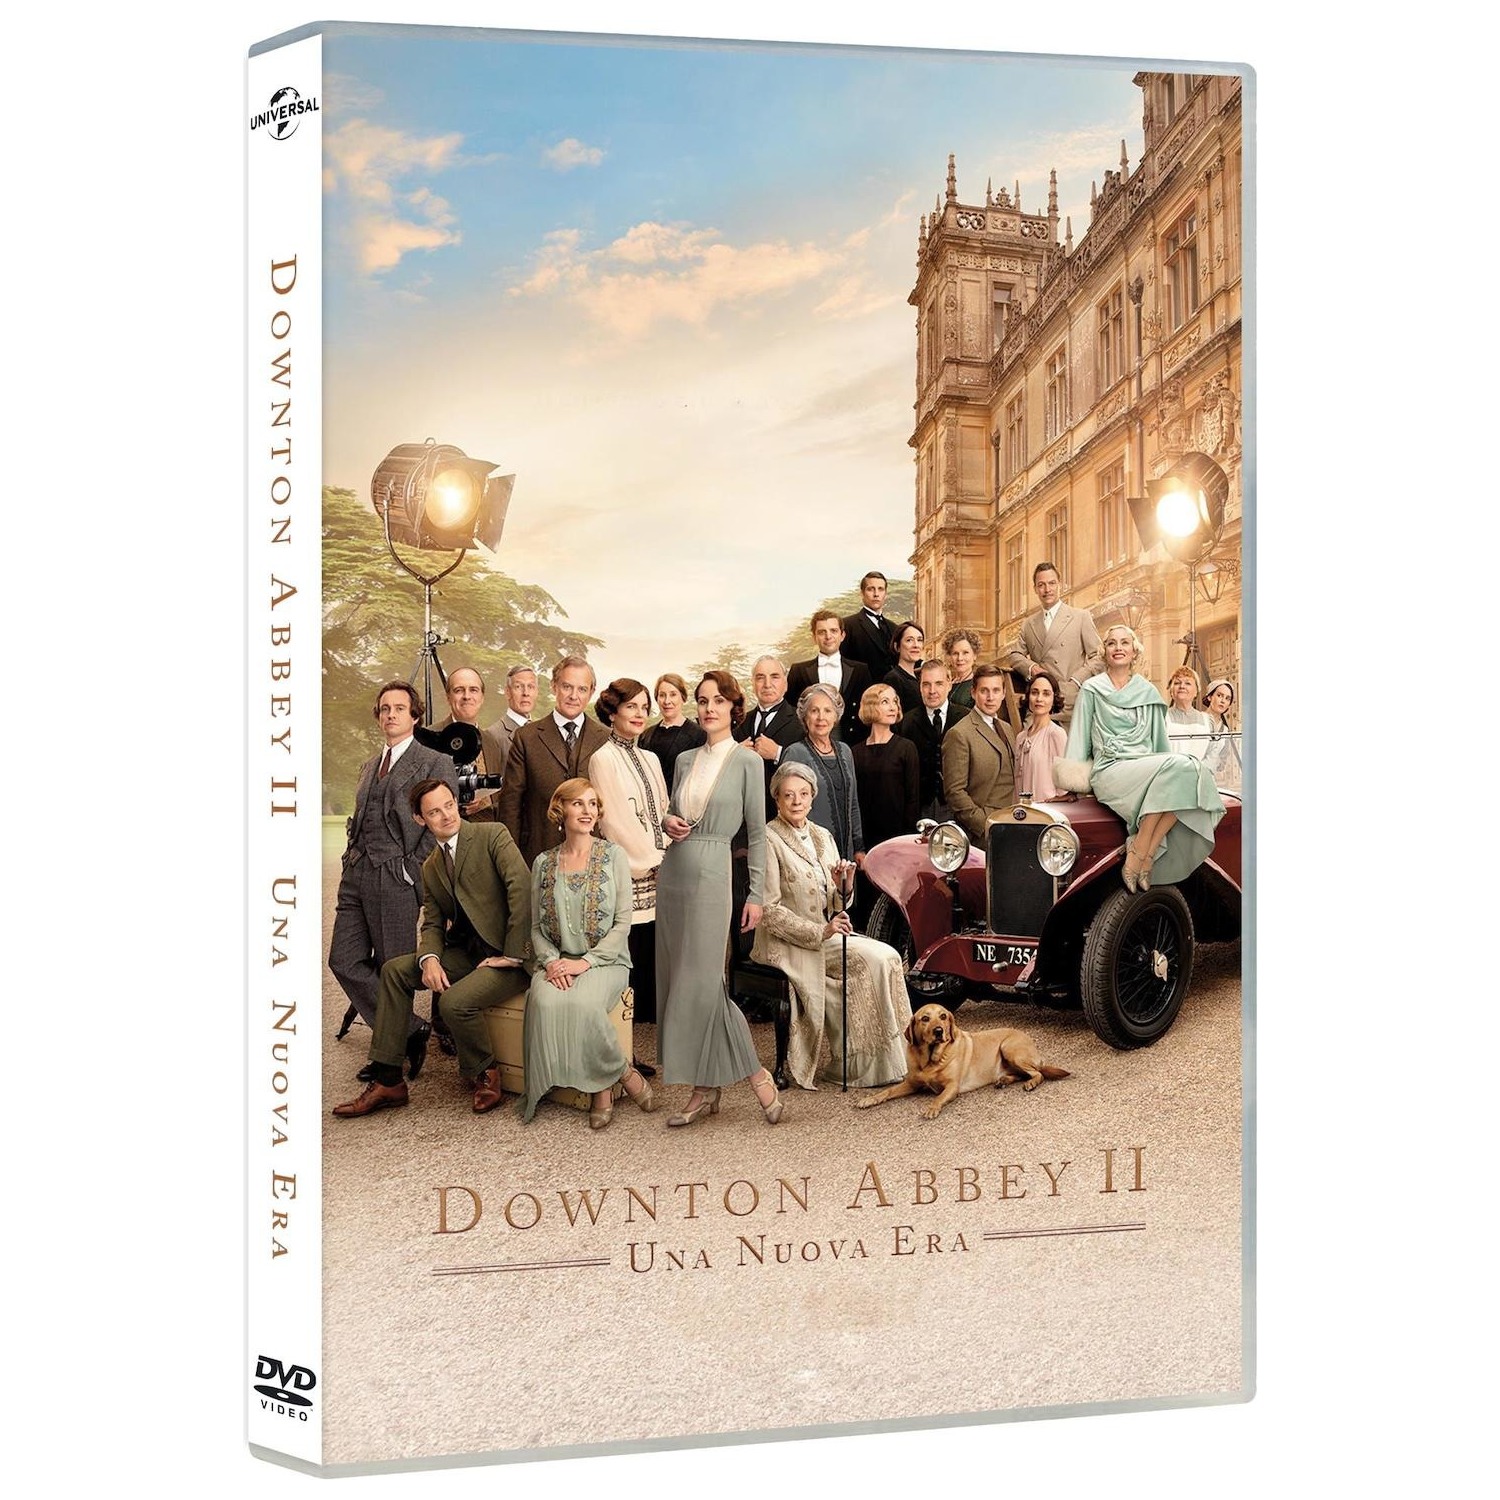 Immagine per DVD Downtown Abbey 2: una nuova era da DIMOStore